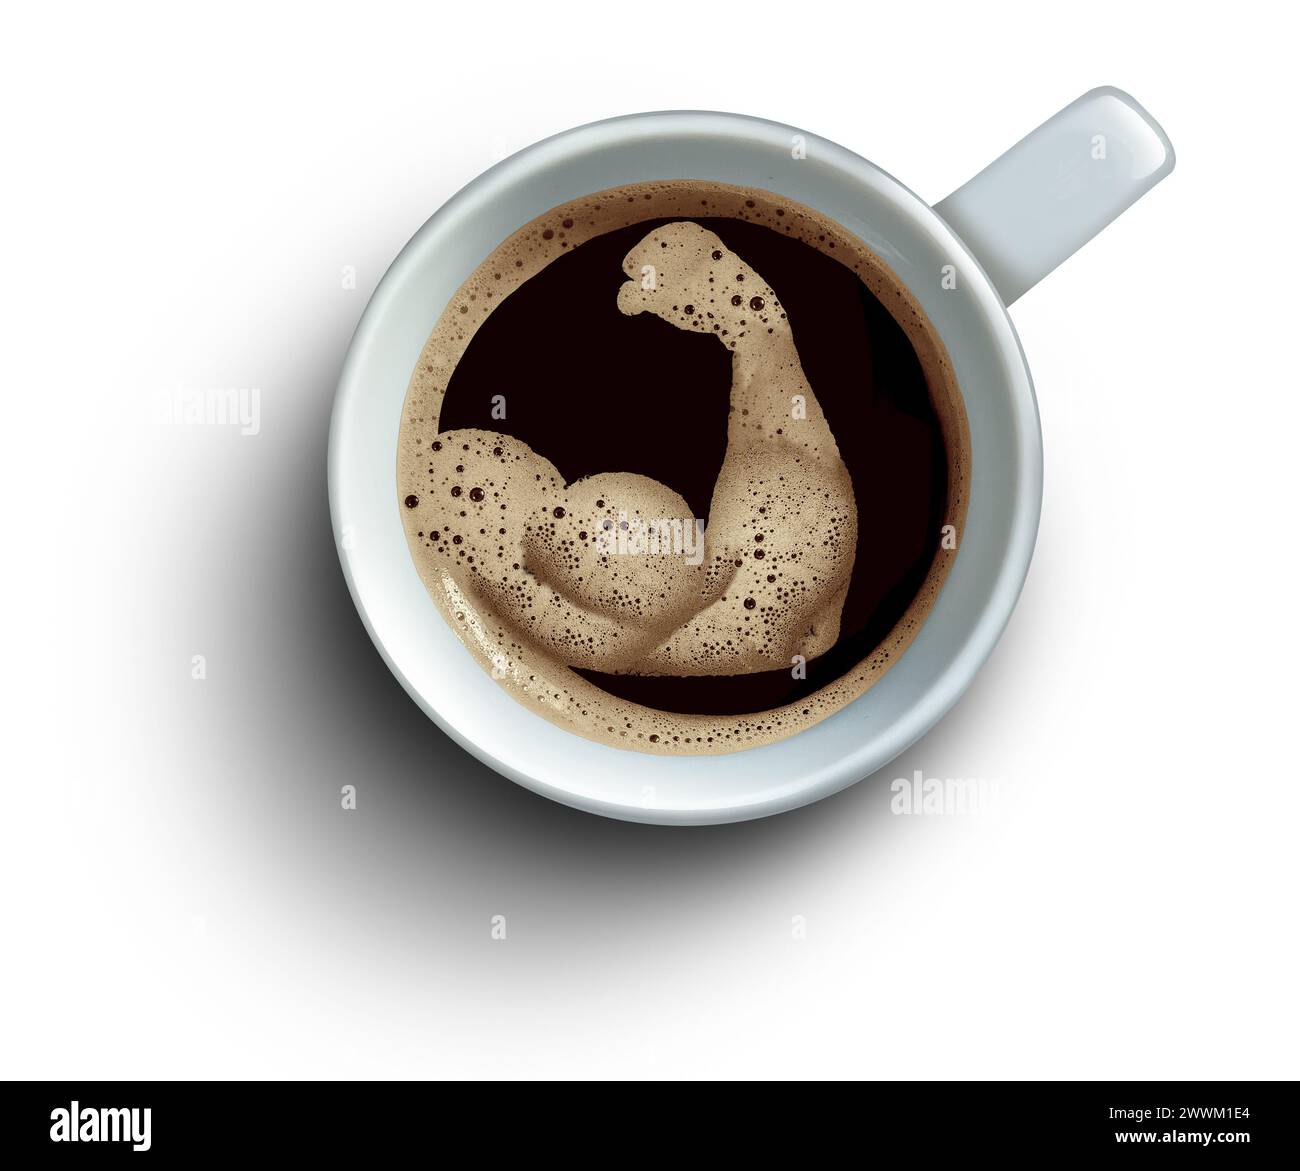 Kaffee Gesundheit Vorteile wie Trigonelline hält Muskeln gesund und reduziert Entzündungen und Herz Gesundheit hilft bei Langlebigkeit und Verlangsamung des Alterns. Stockfoto